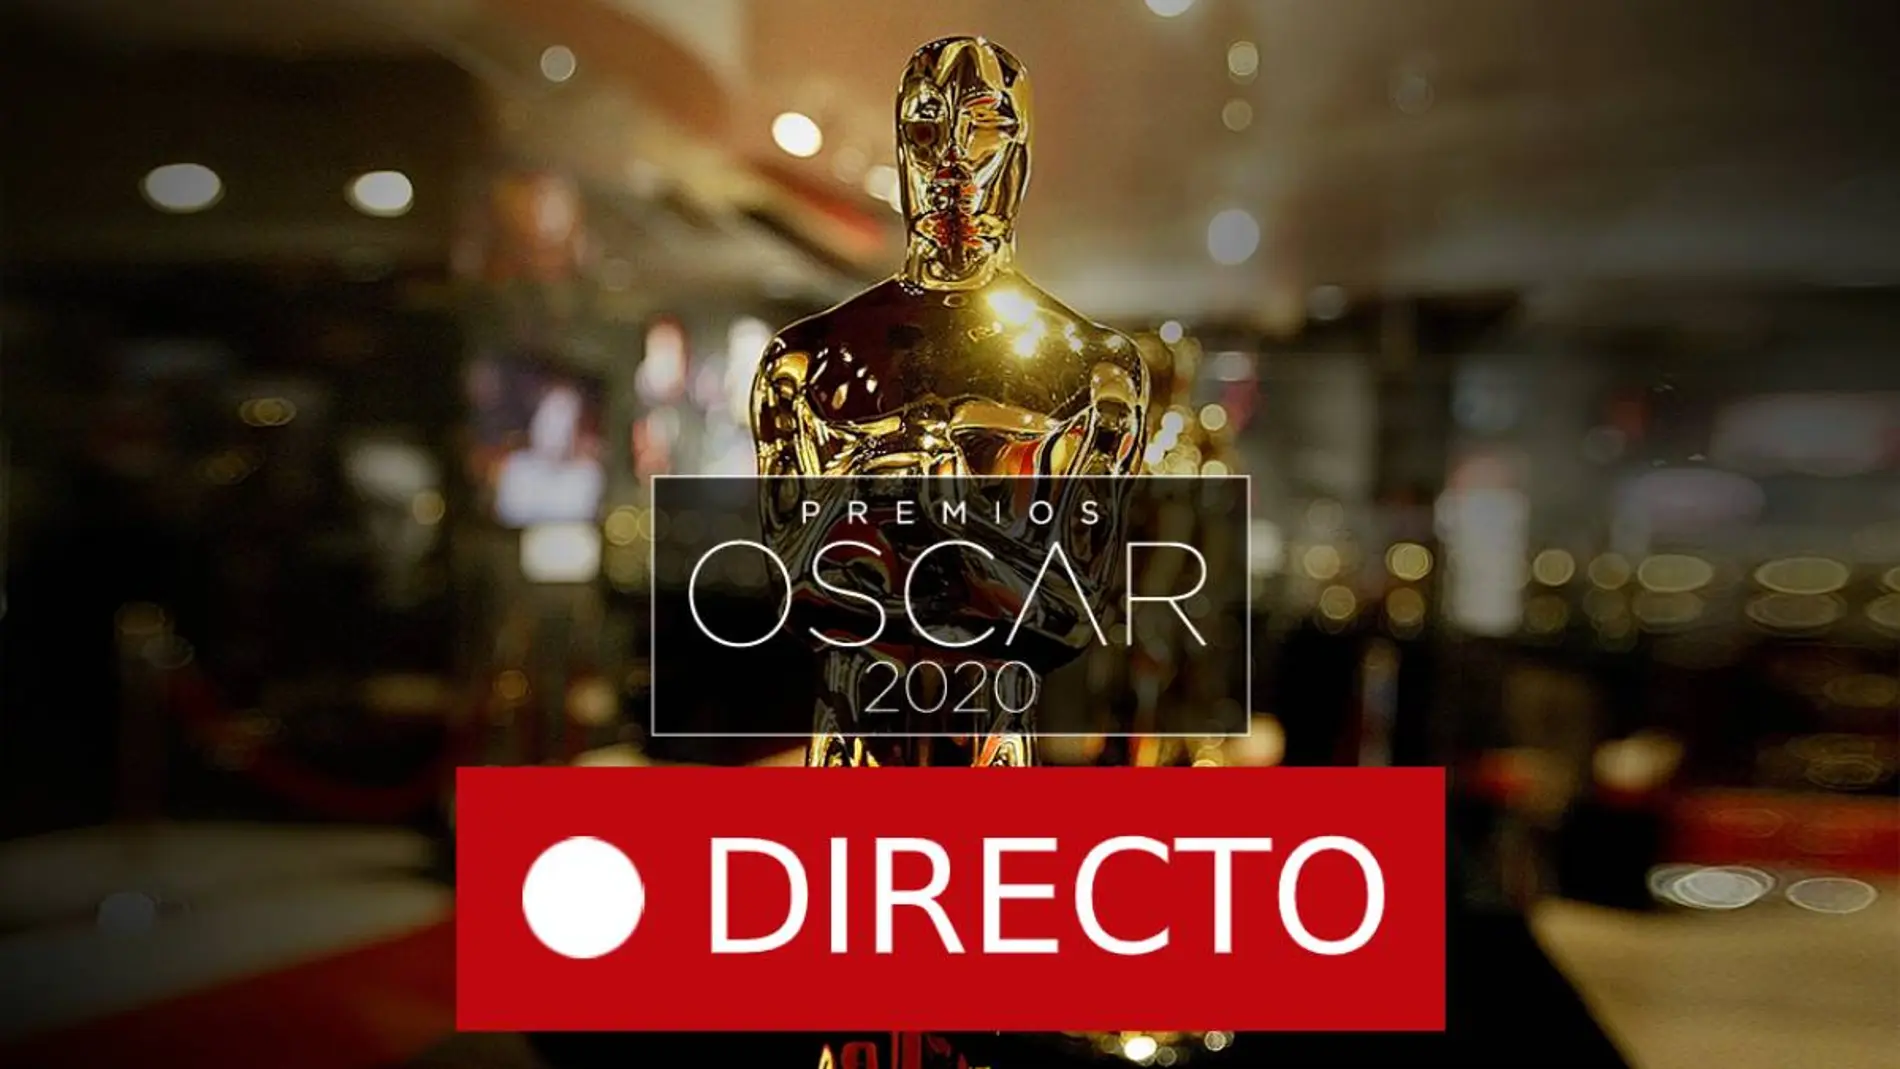 Sigue en directo las reacciones de los ganadores de los premios Oscars 2020, las entrevistas y felicitaciones en redes sociales.